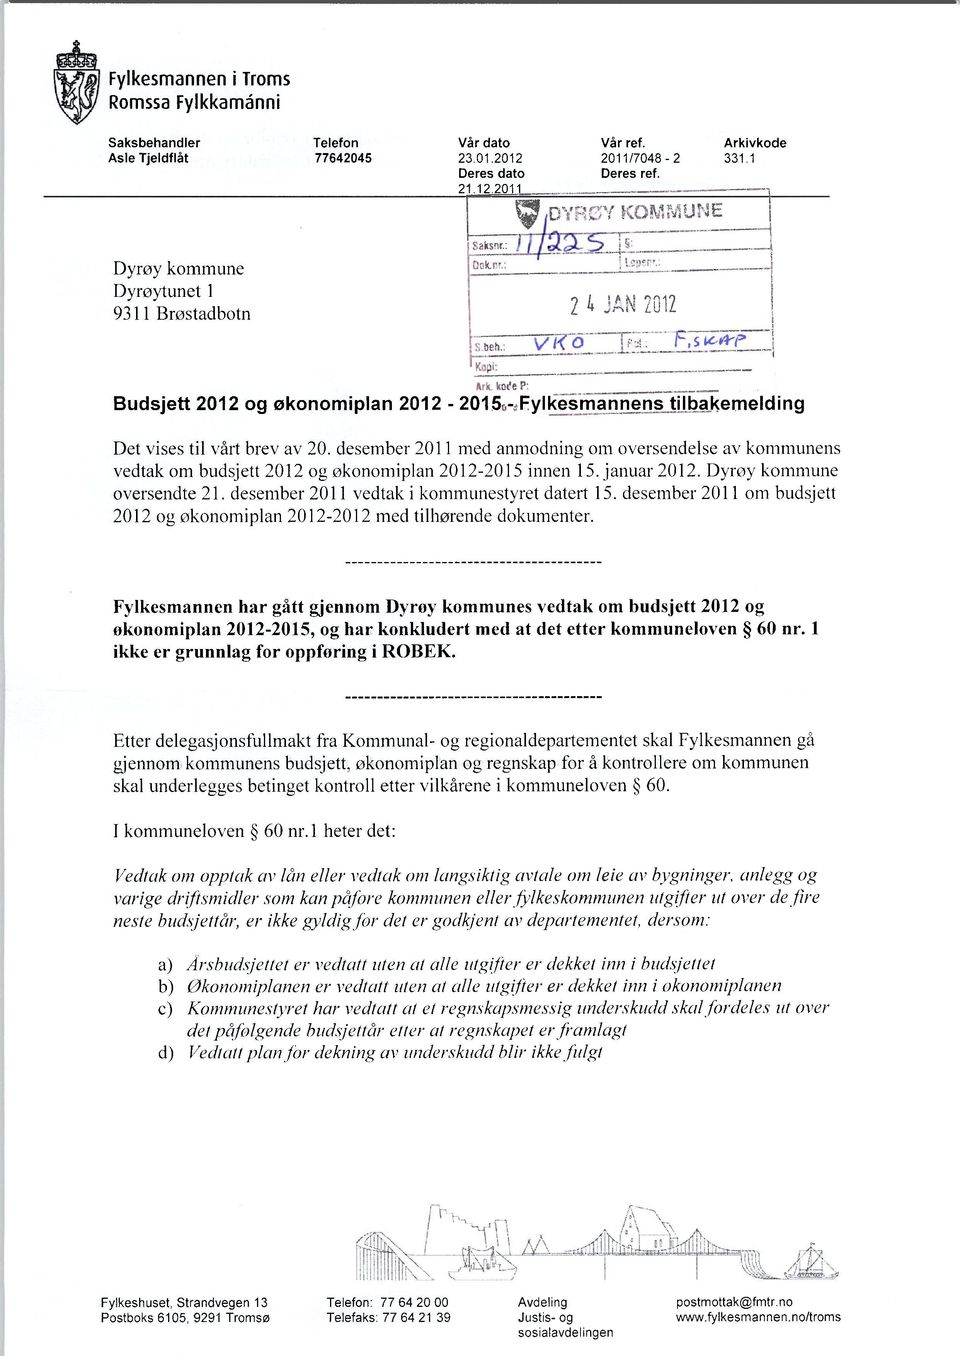 desember 2011 med anmodning om oversendelse av kommunens vedtak om budsjett 2012 og økonomiplan 2012-2015 innen 15. januar 2012. Dyrøy kommune oversendte 21.